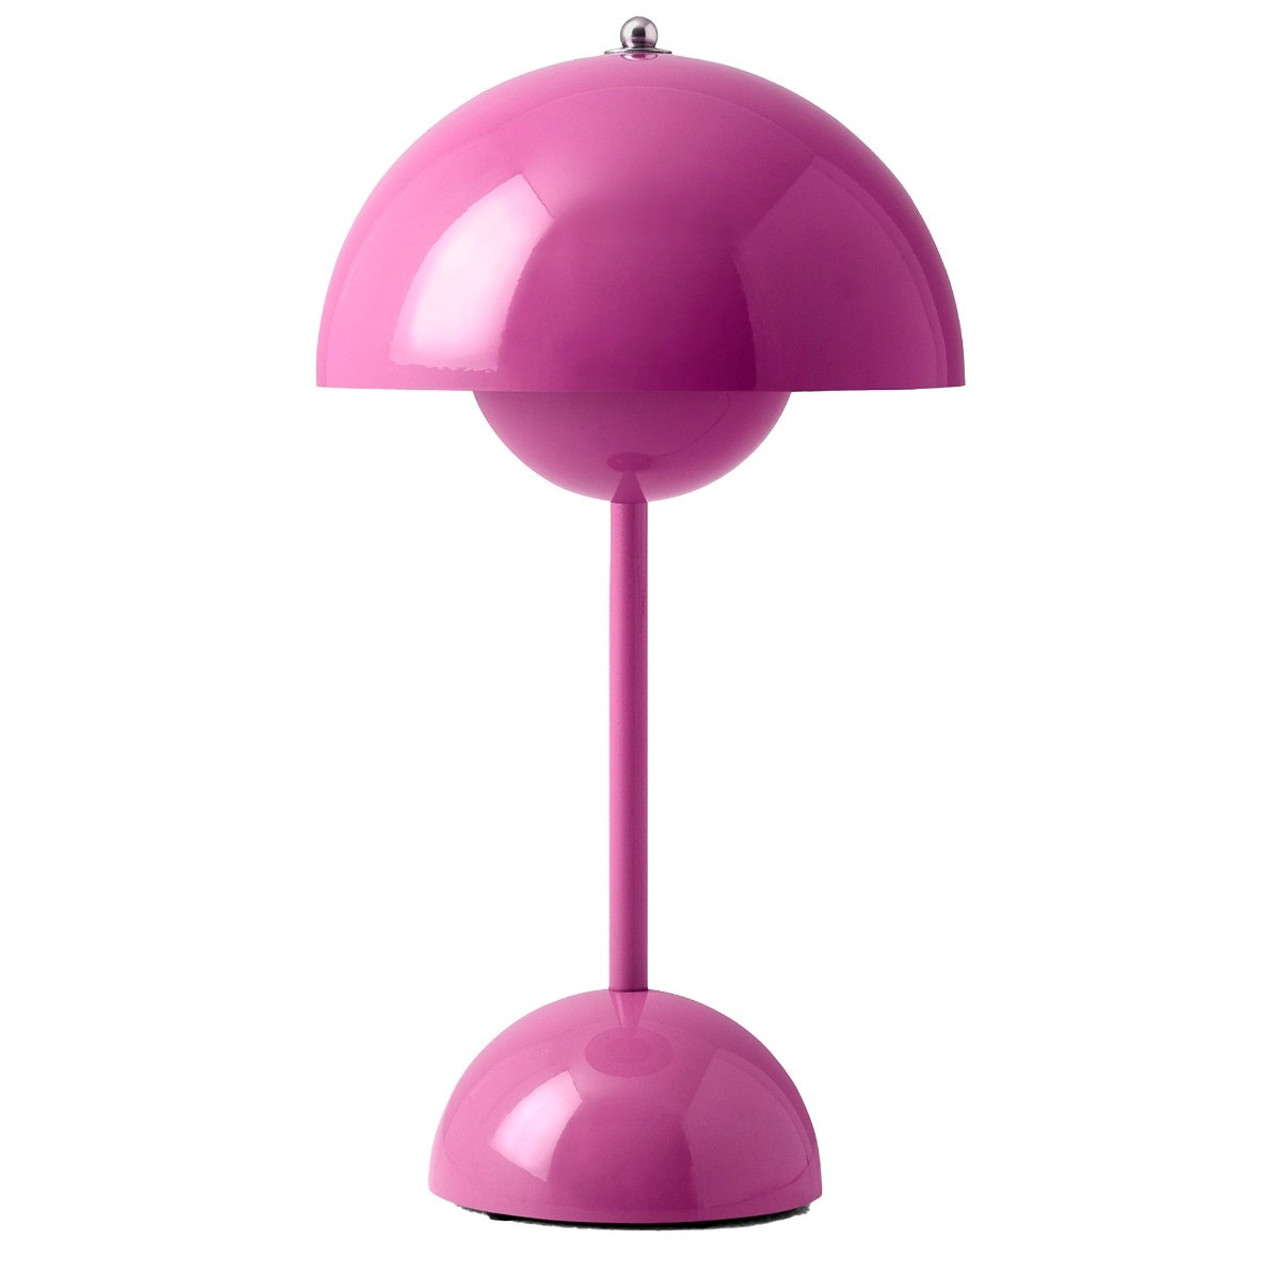 VP9 Flowerpot Portable Lamp - Lekker Home